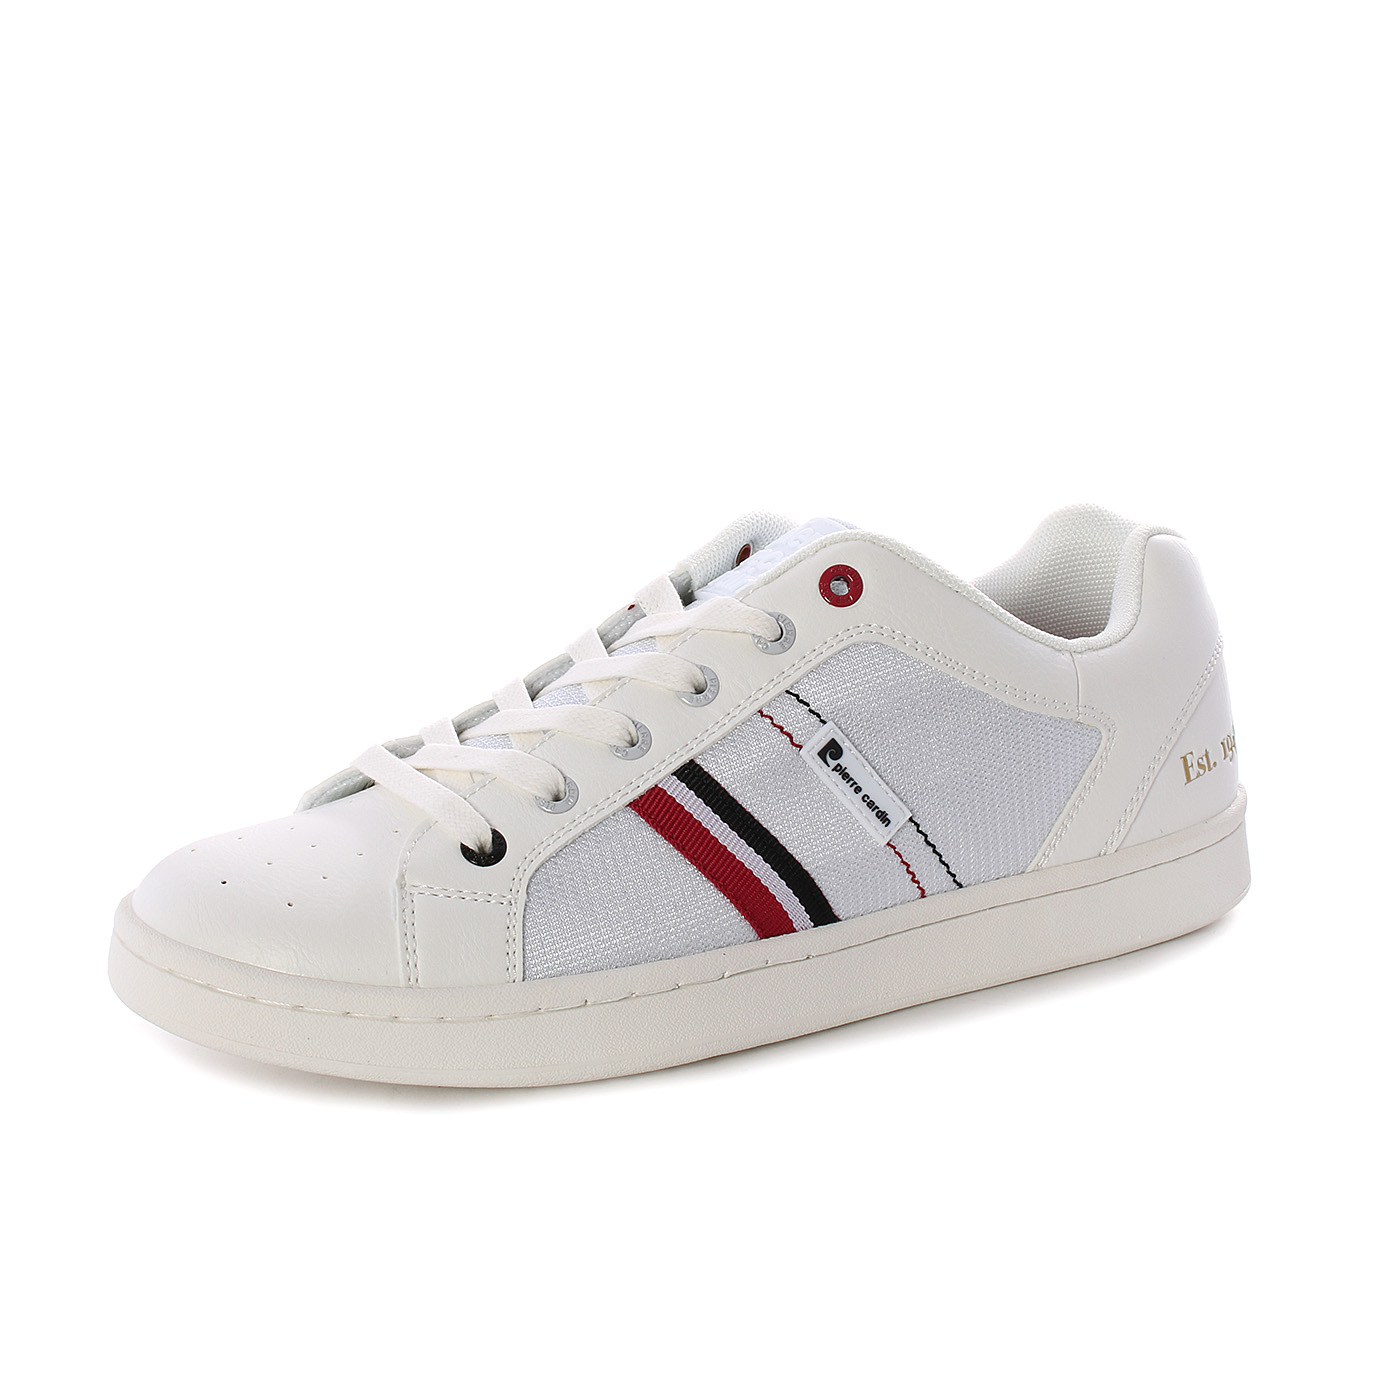 Pierre Cardin - Sneakers basse in tessuto e similpelle - Bianco, Blu -  MitShopping - Abbigliamento e scarpe